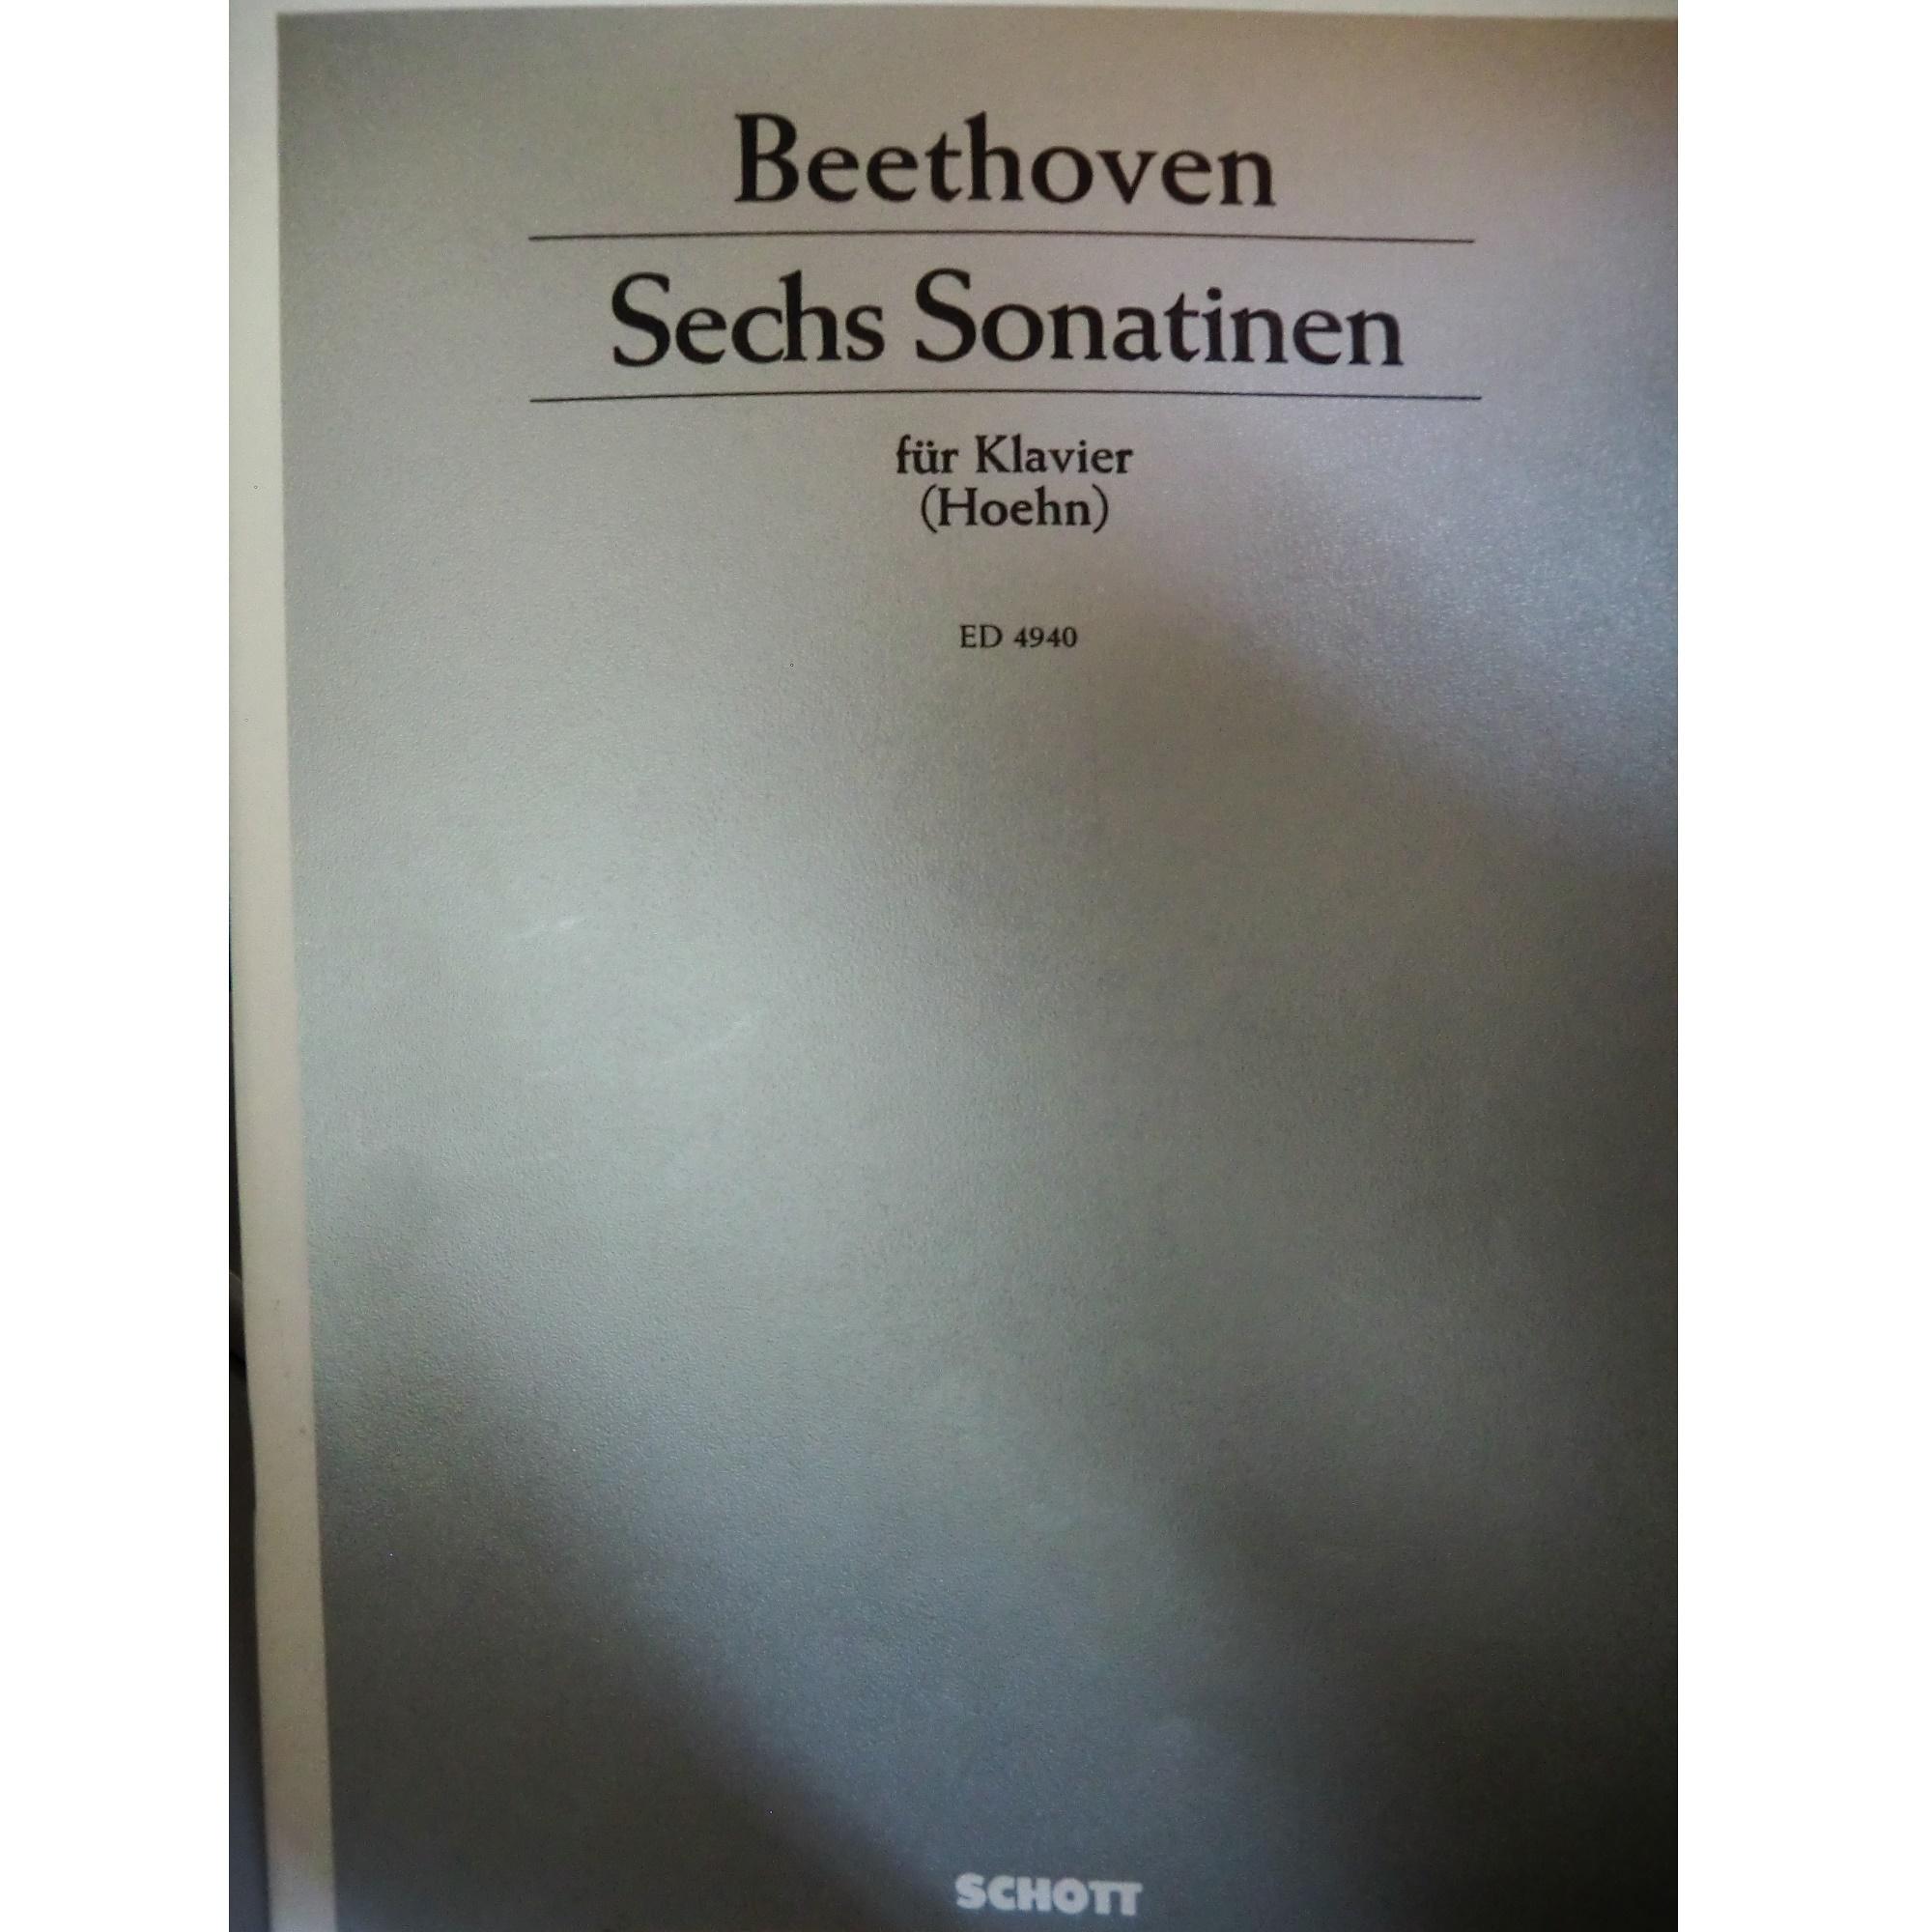 Beethoven Sechs Sonatinen (Hoehn) - Schott